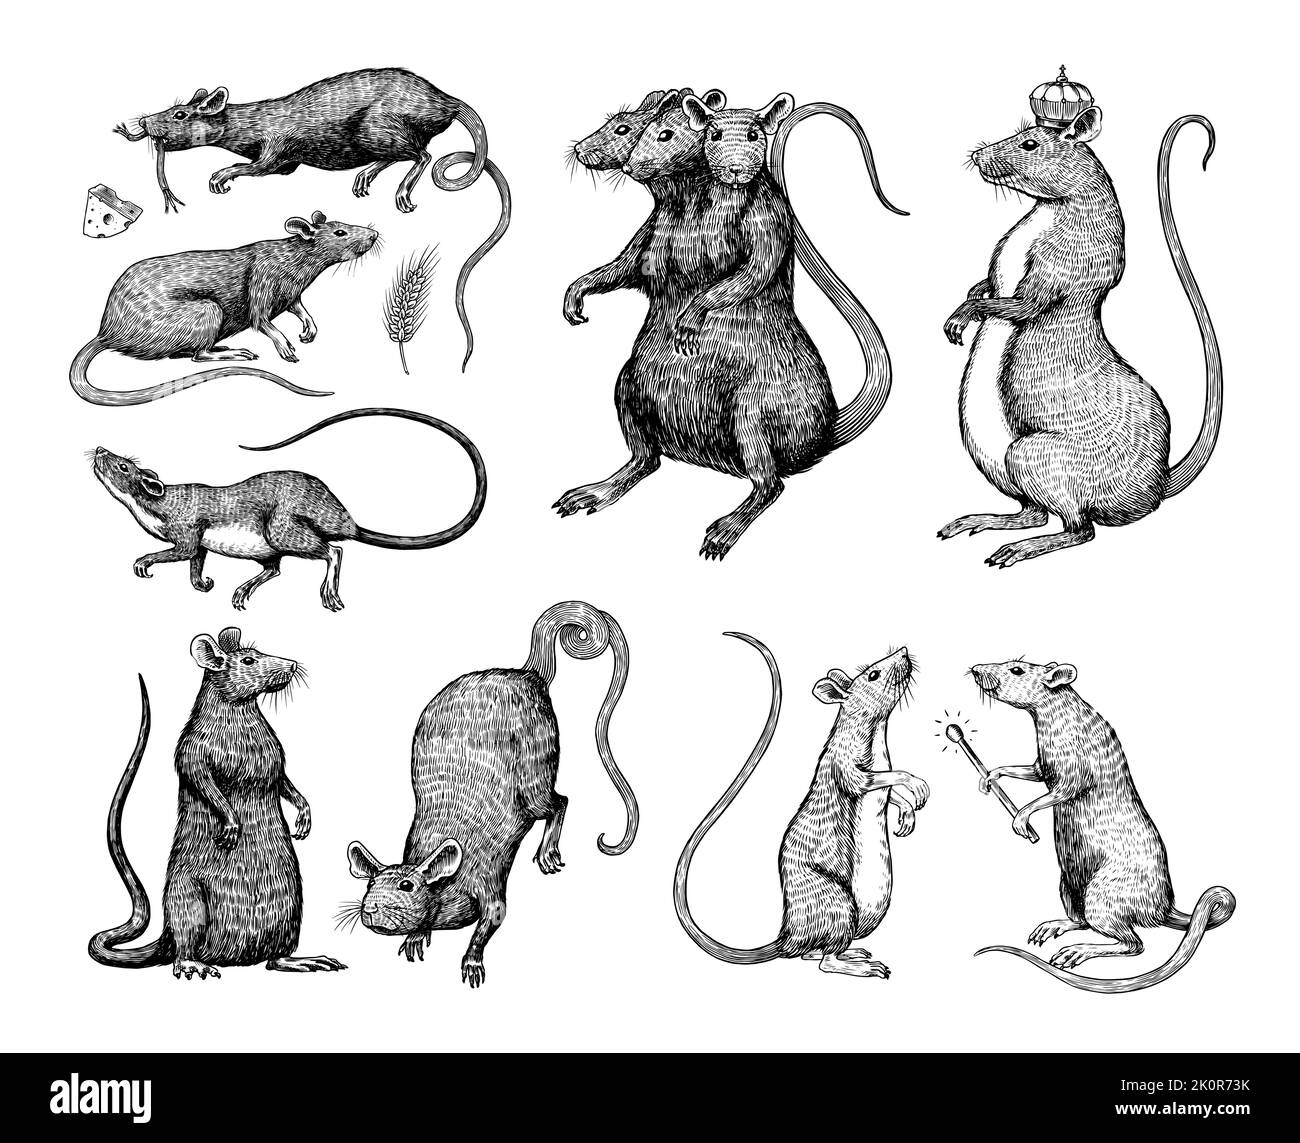 Rattenkönig oder Maus. Grafik: Wildes Tier. Handgezeichnete Vintage-Skizze. Gravierte Grunge-Elemente. Stock Vektor